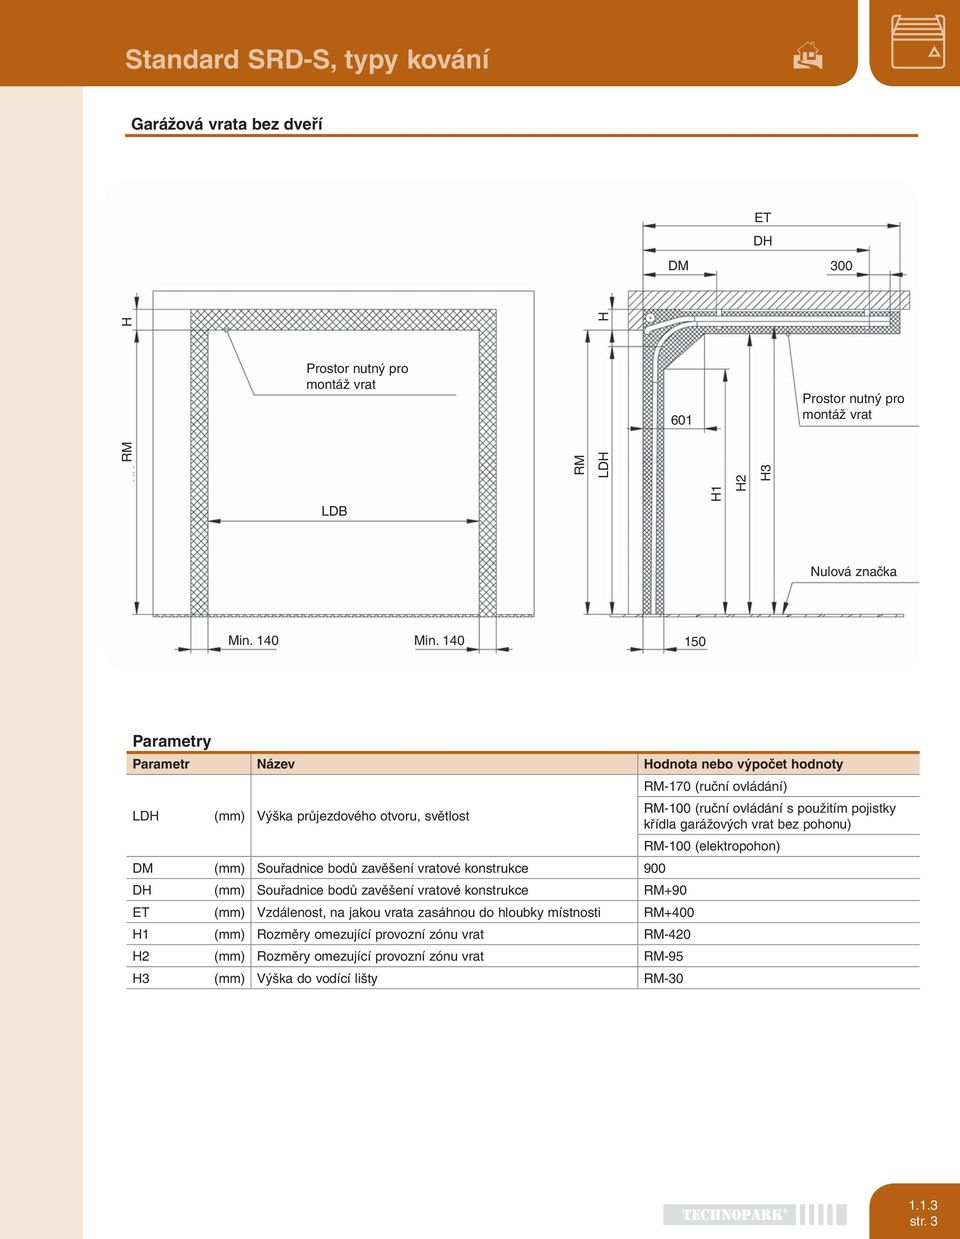 garážových vrat bez pohonu) RM-100 (elektropohon) DM (mm) Souřadnice bodů zavěšení vratové konstrukce 900 DH (mm) Souřadnice bodů zavěšení vratové konstrukce RM+90 ET (mm) Vzdálenost, na